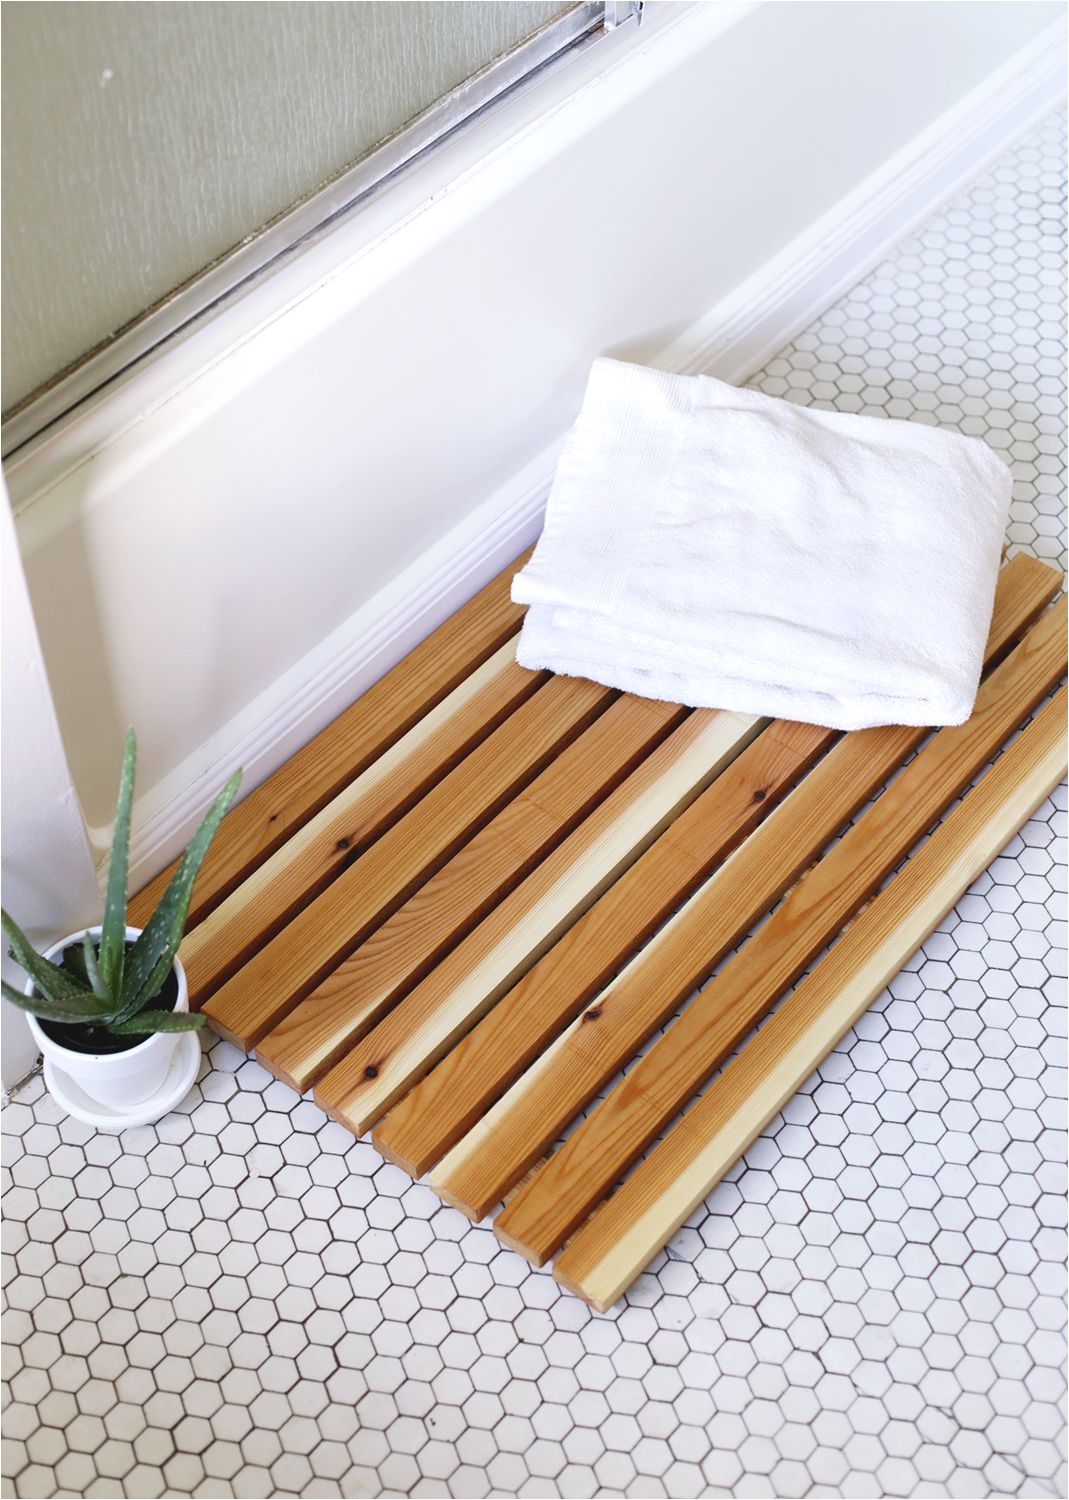 diy cedar bath mat so much better than a soggy fabric one